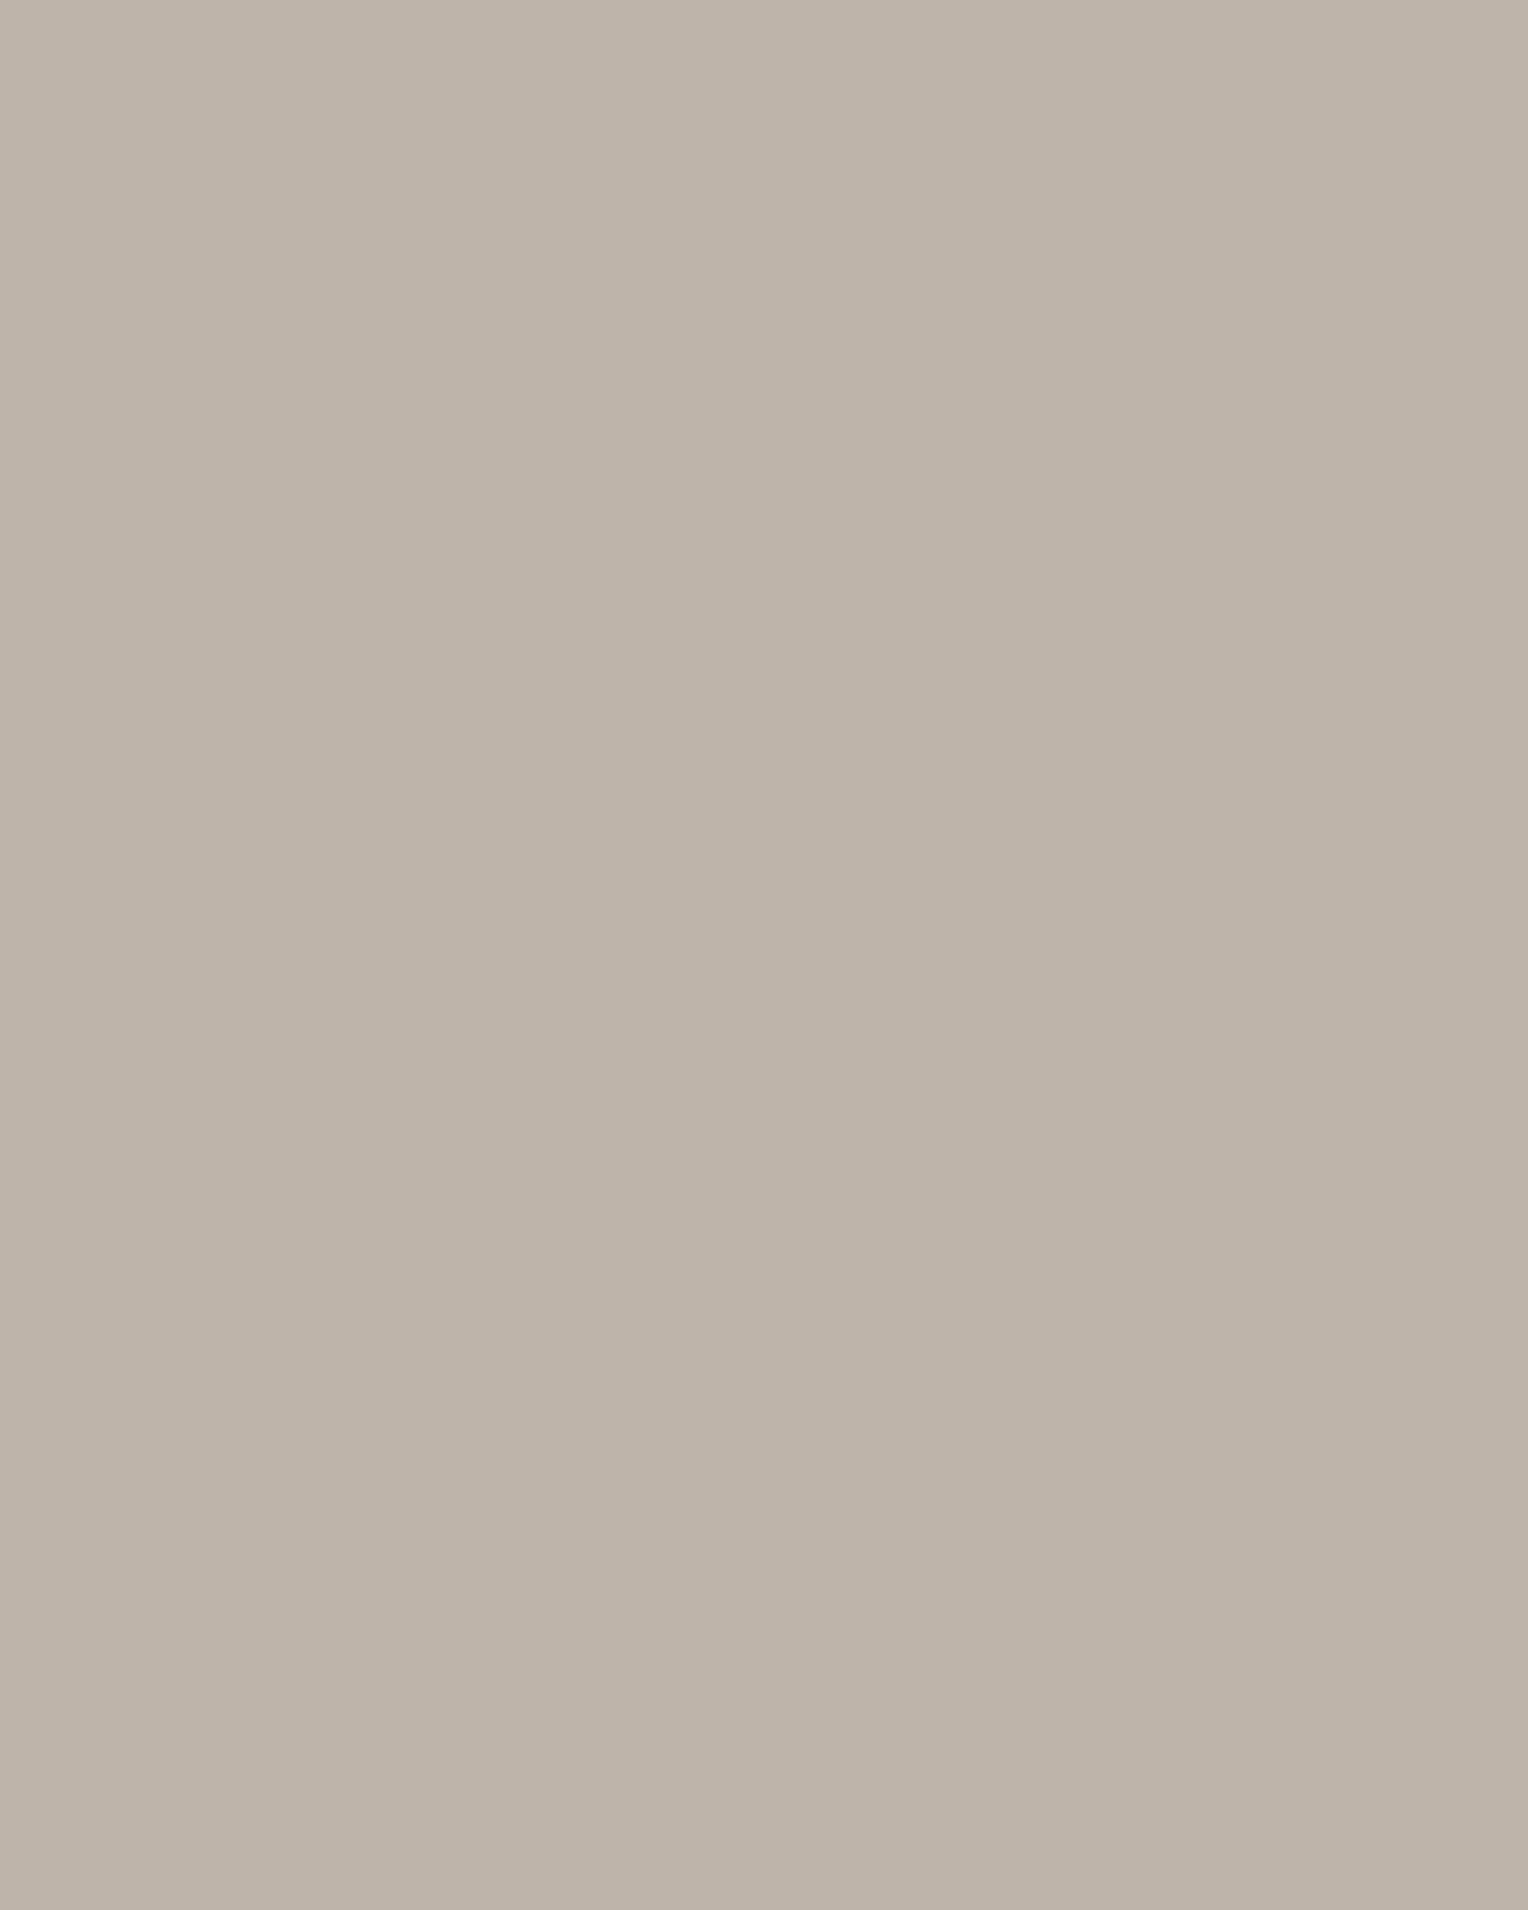 Игорь Грабарь. Мартовский снег (фрагмент). 1904. Государственная Третьяковская галерея, Москва